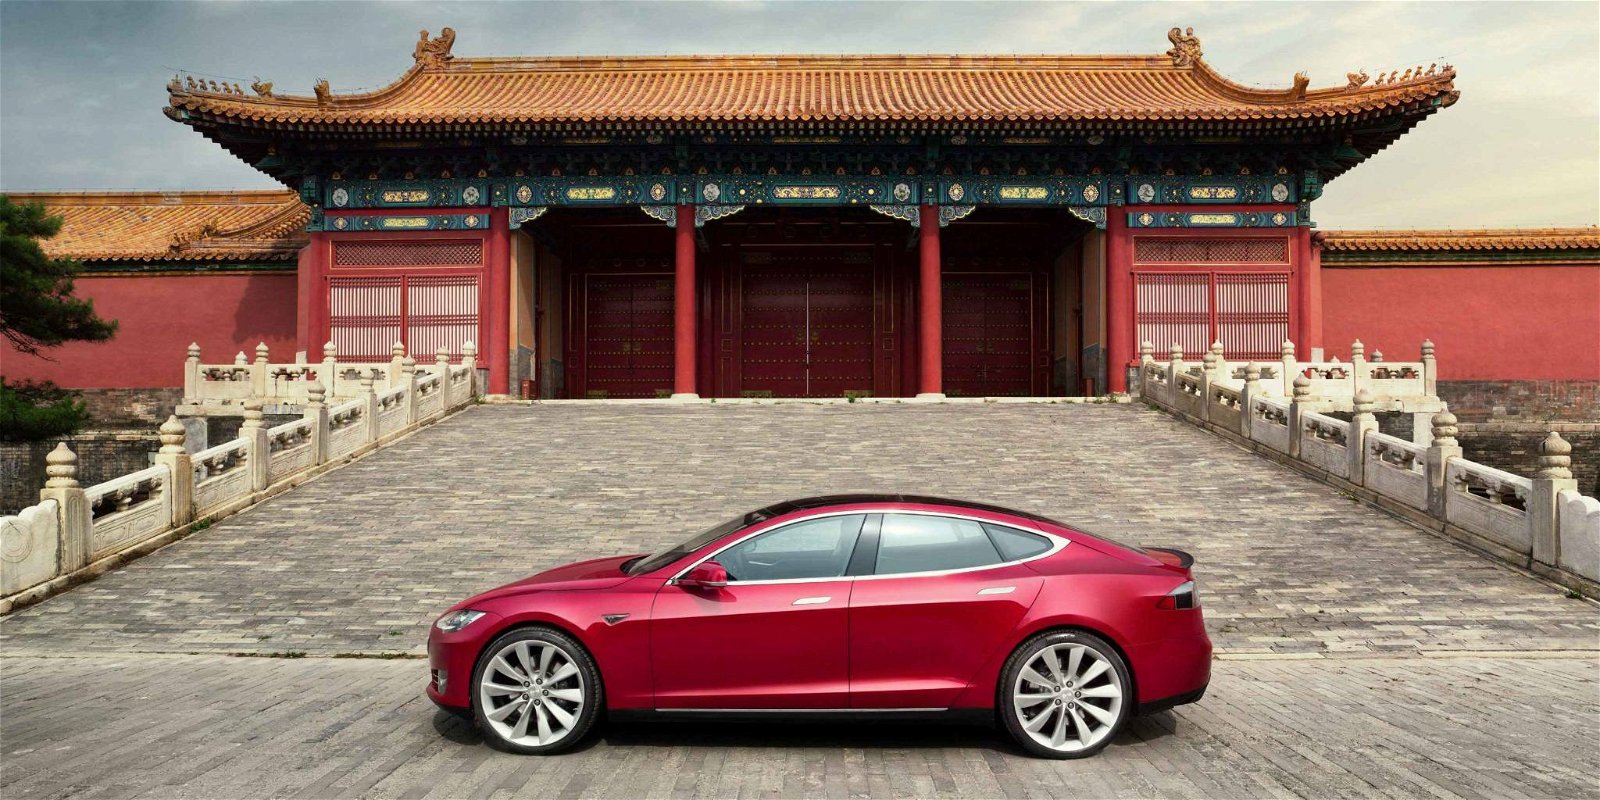 Immagine di Dipendenti costretti ad acquistare Tesla fallate, accade in Cina. O forse no